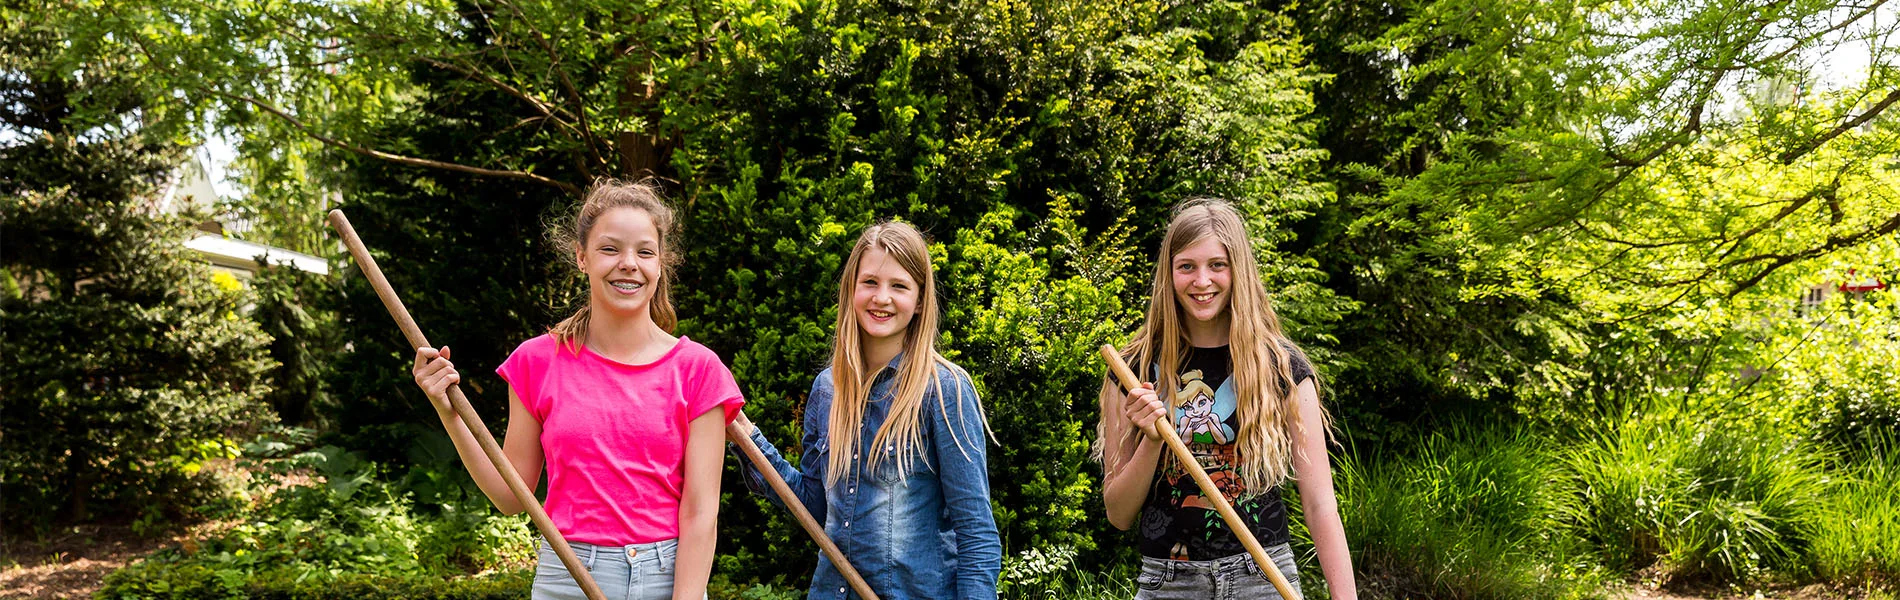 VMBO Nijkerk drie meisjes met schoffel